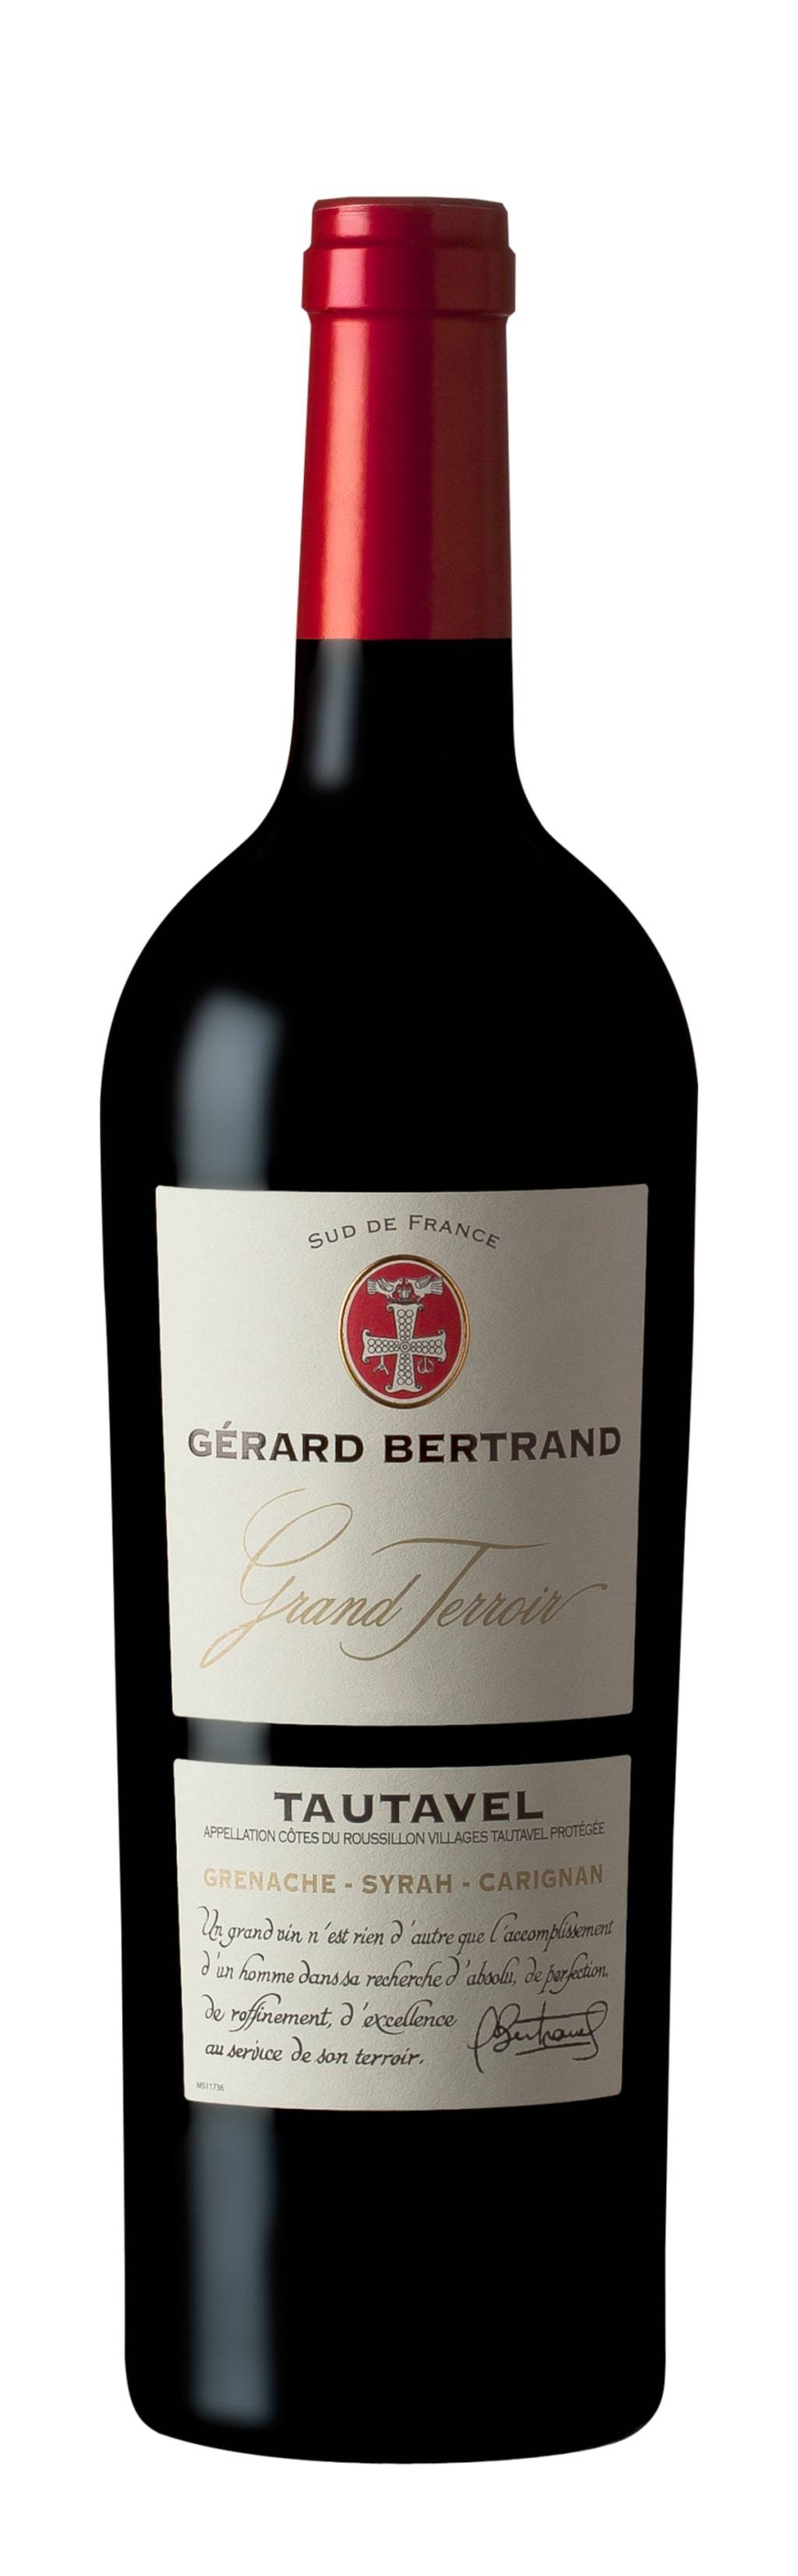 Gerard Bertrand Tautavel Grand Terroir 2016